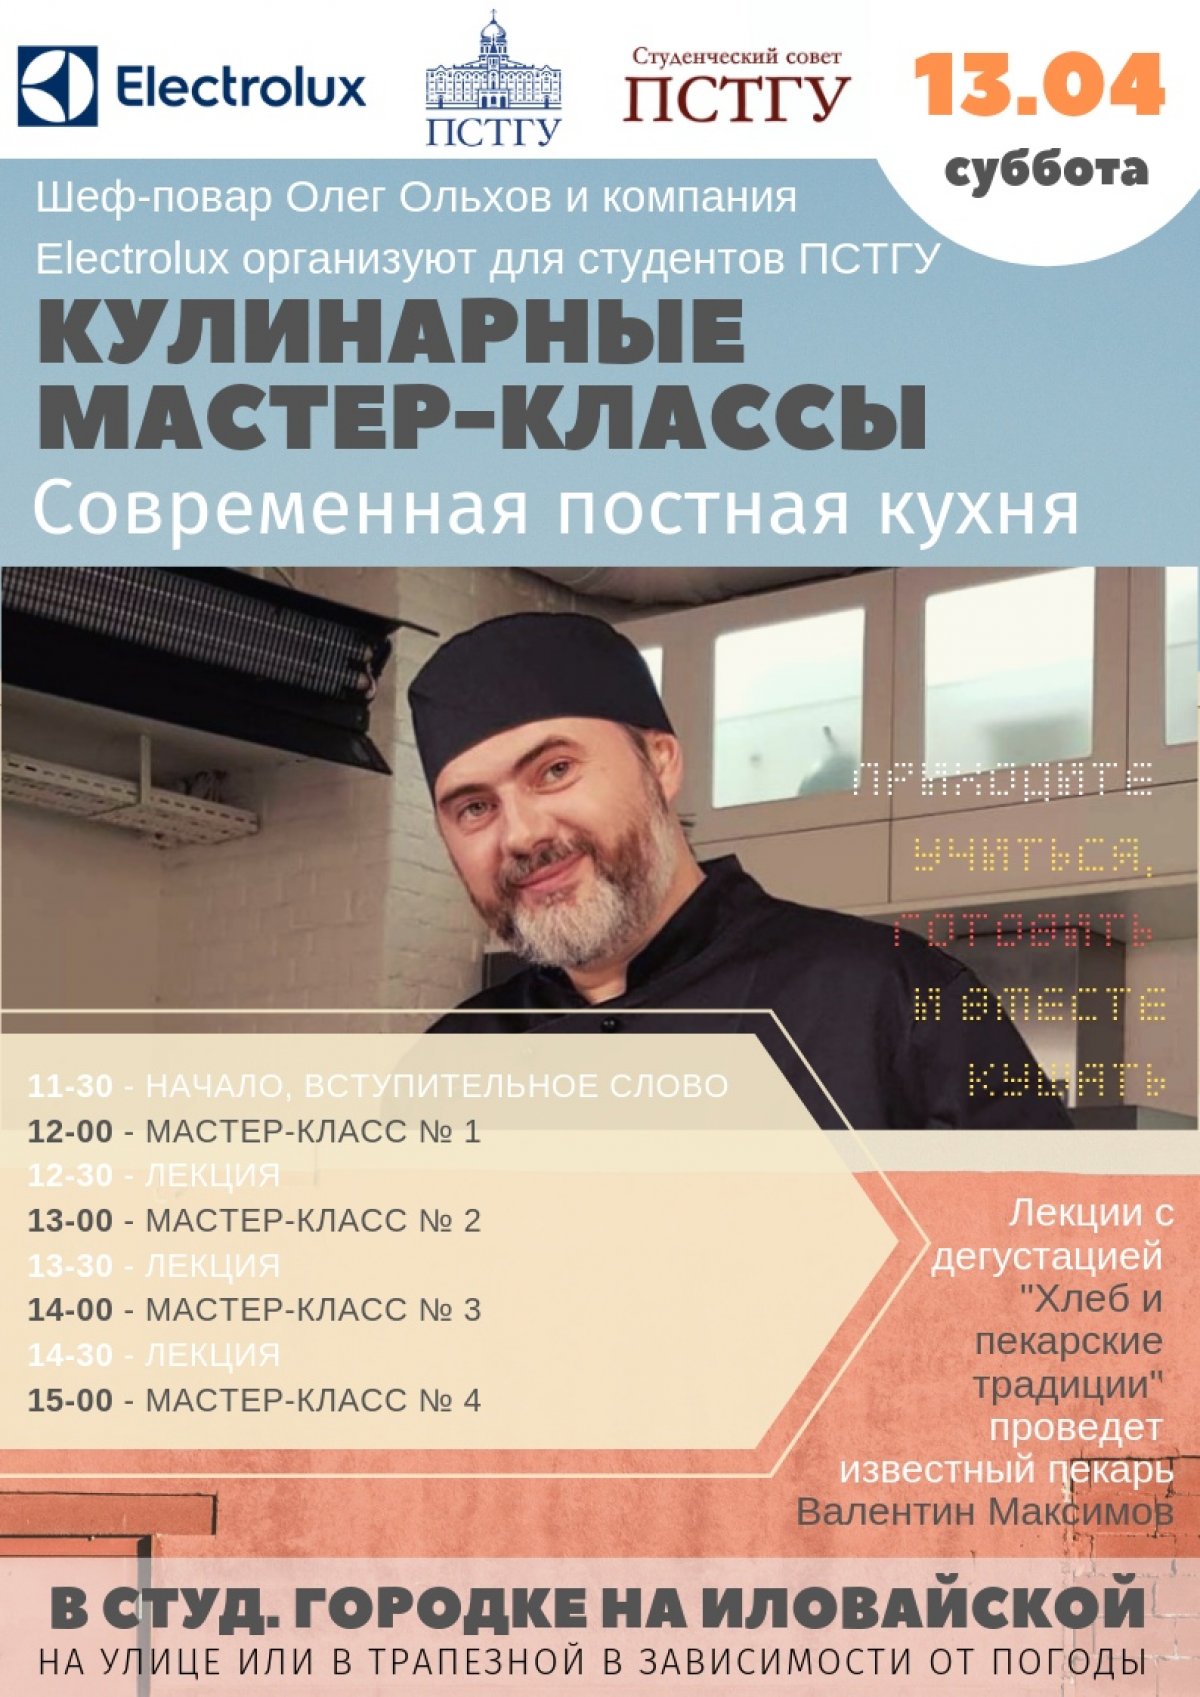 Уже завтра, в субботу 13 апреля в трапезной студенческого городка на Иловайской состоится мастер-класс по постной кухне. Его для нас проведет православный шеф-повар Олег Ольхов.